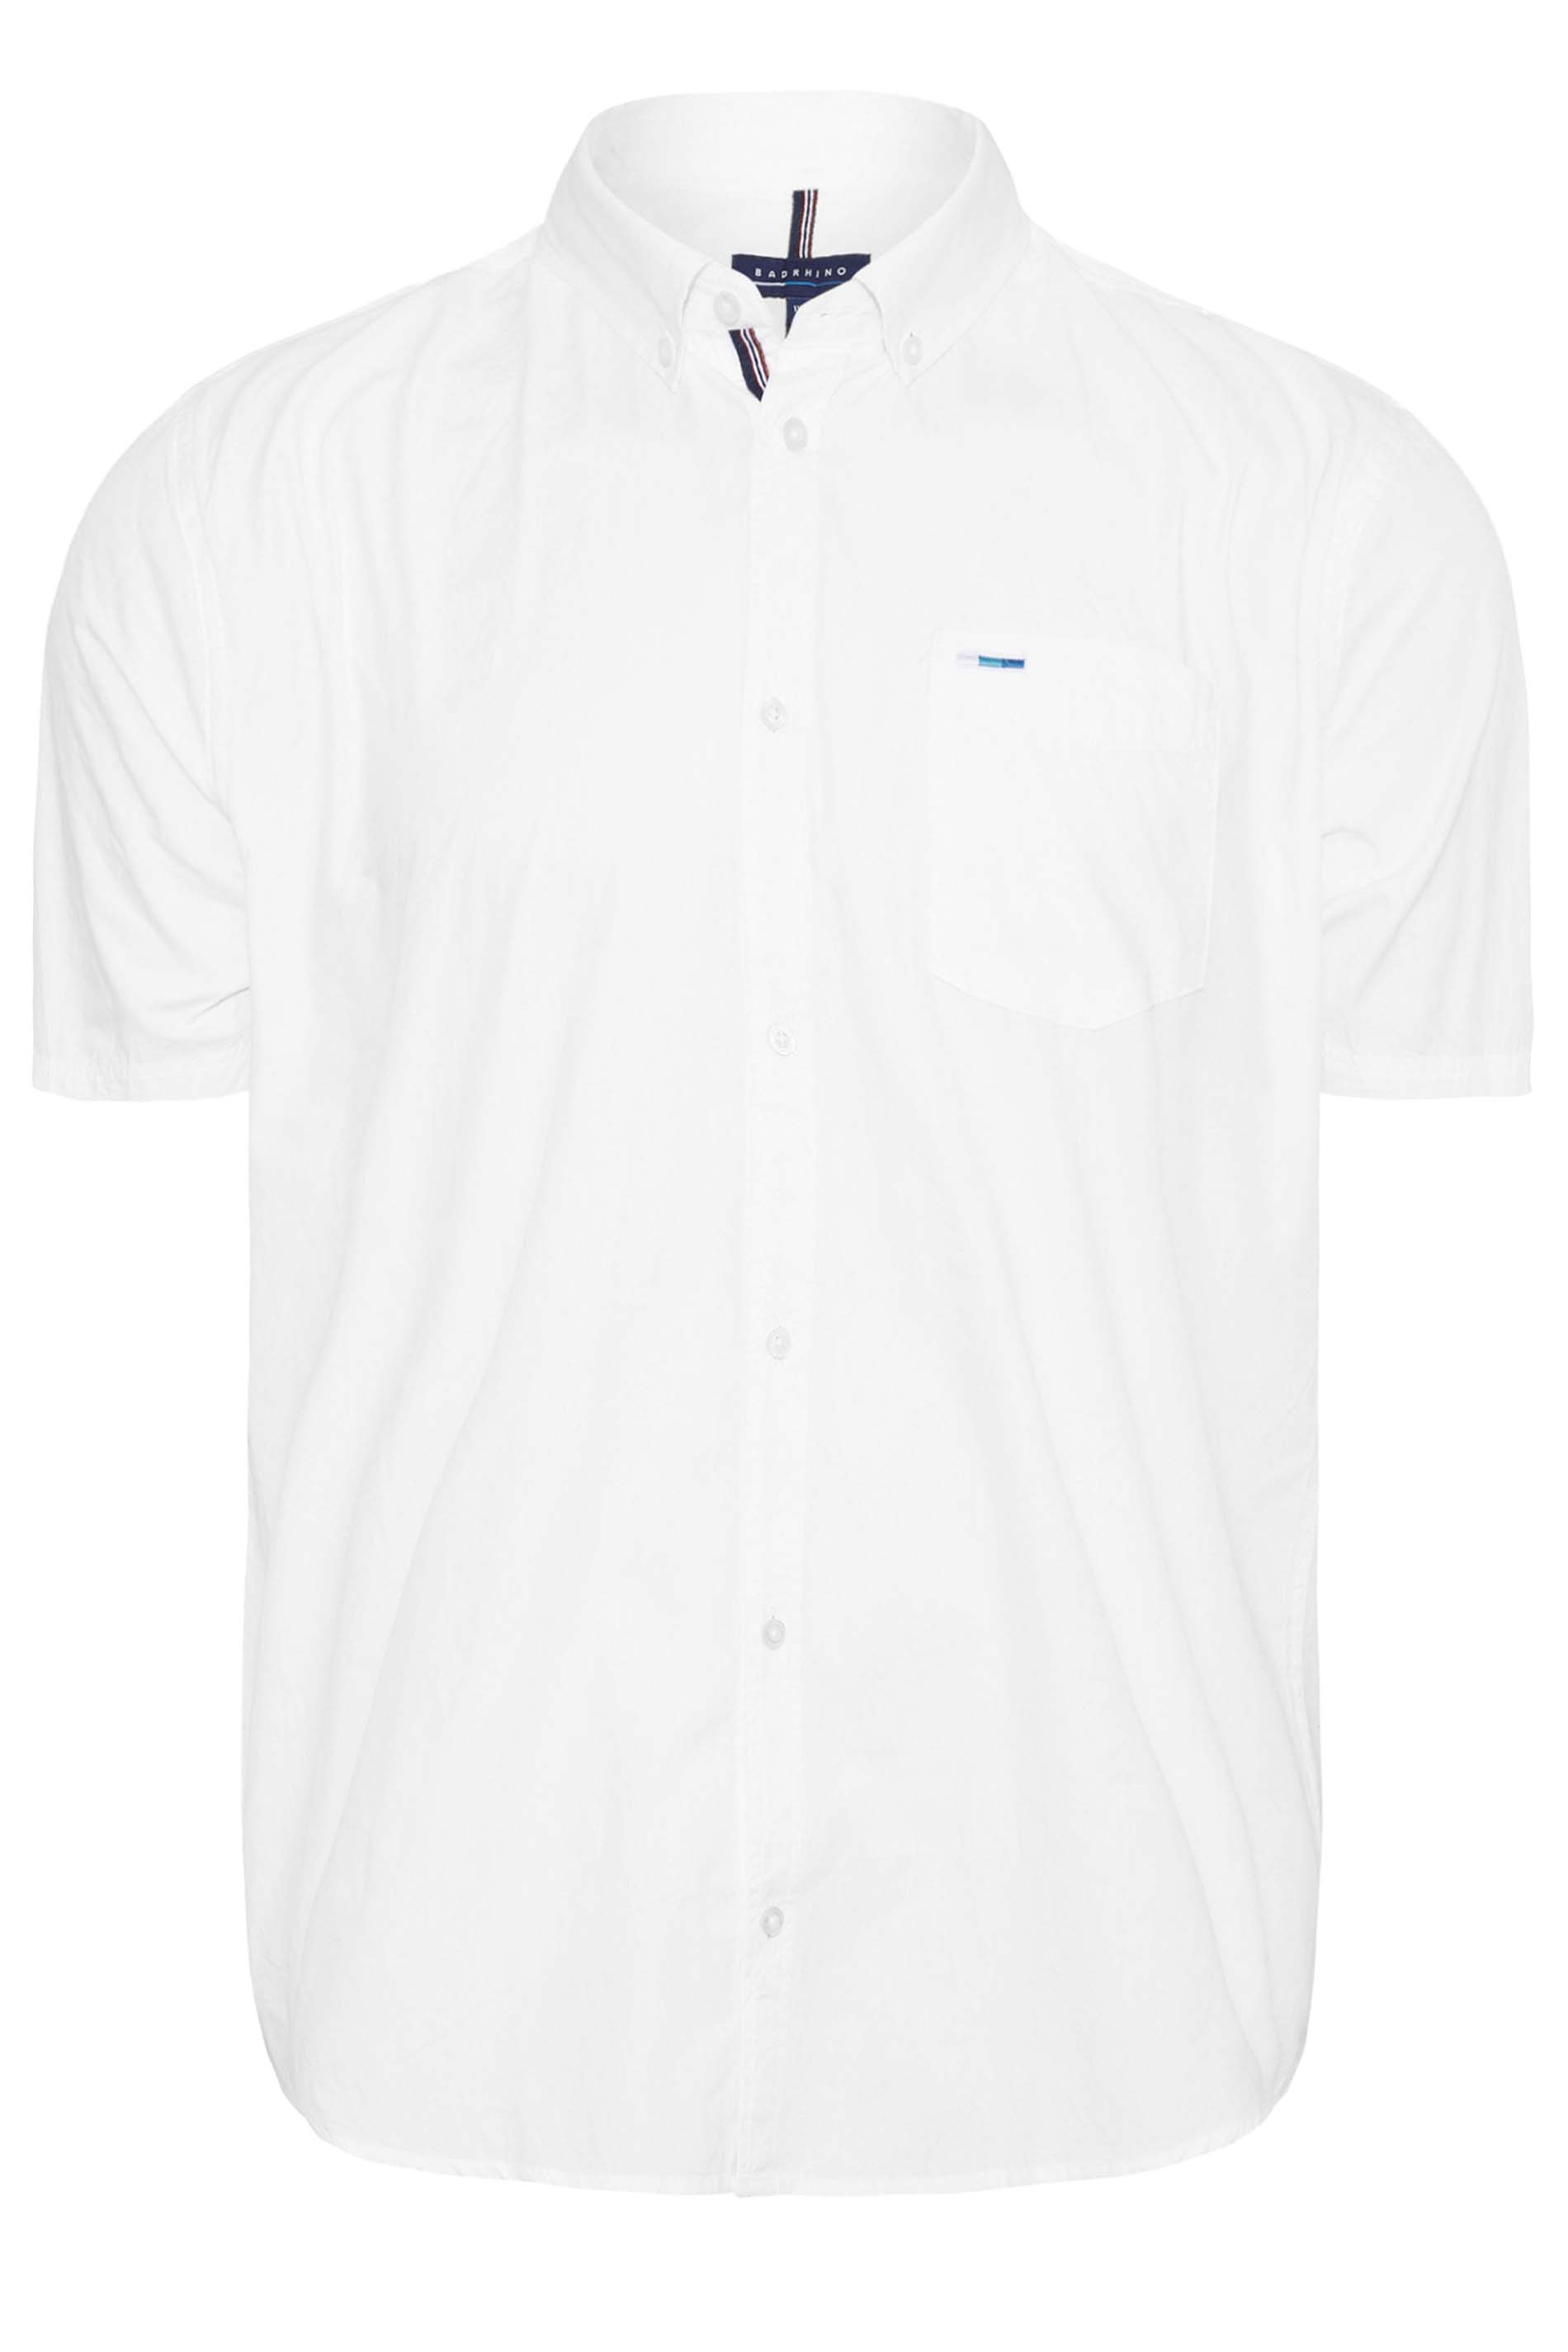 BadRhino White Cotton Poplin Short Sleeve Shirt | BadRhino 3